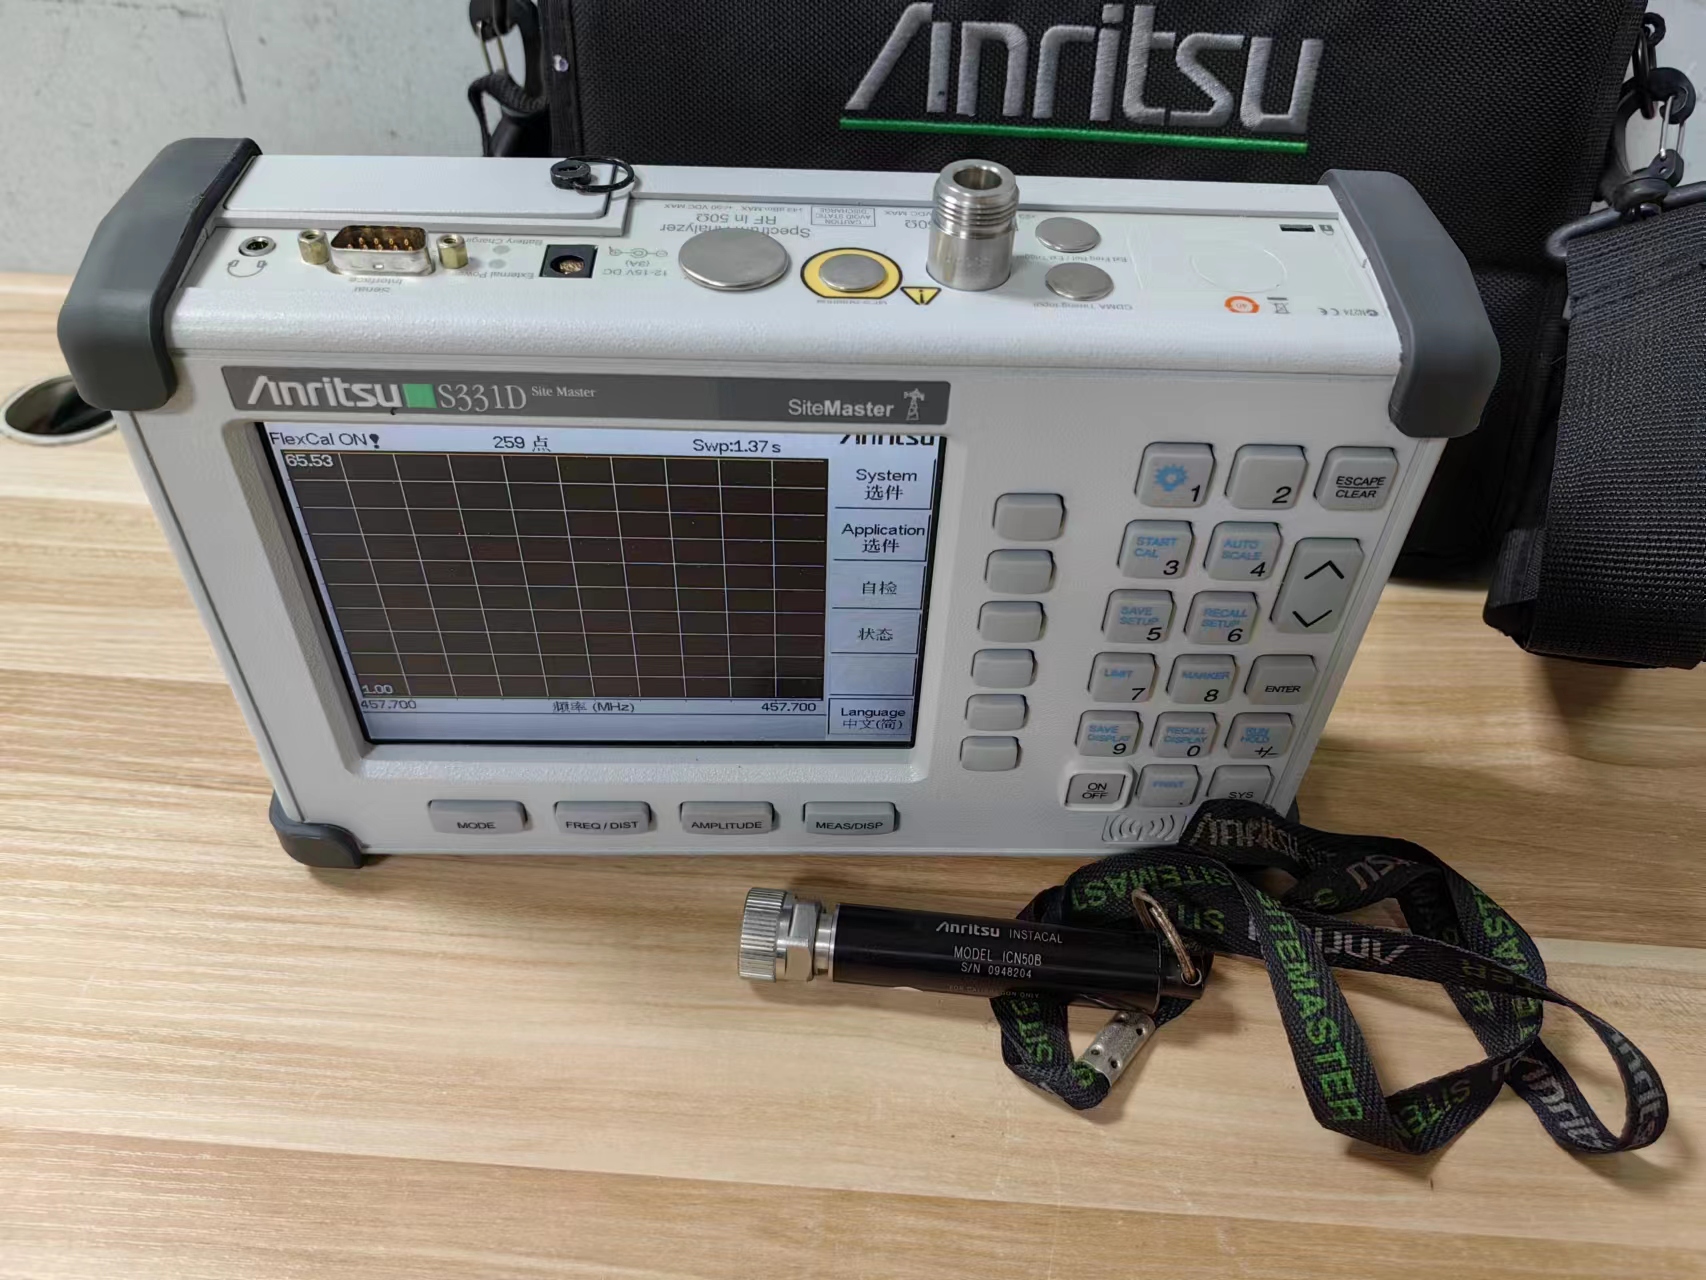 安立Anritsu S331D电缆天线分析仪技术支持